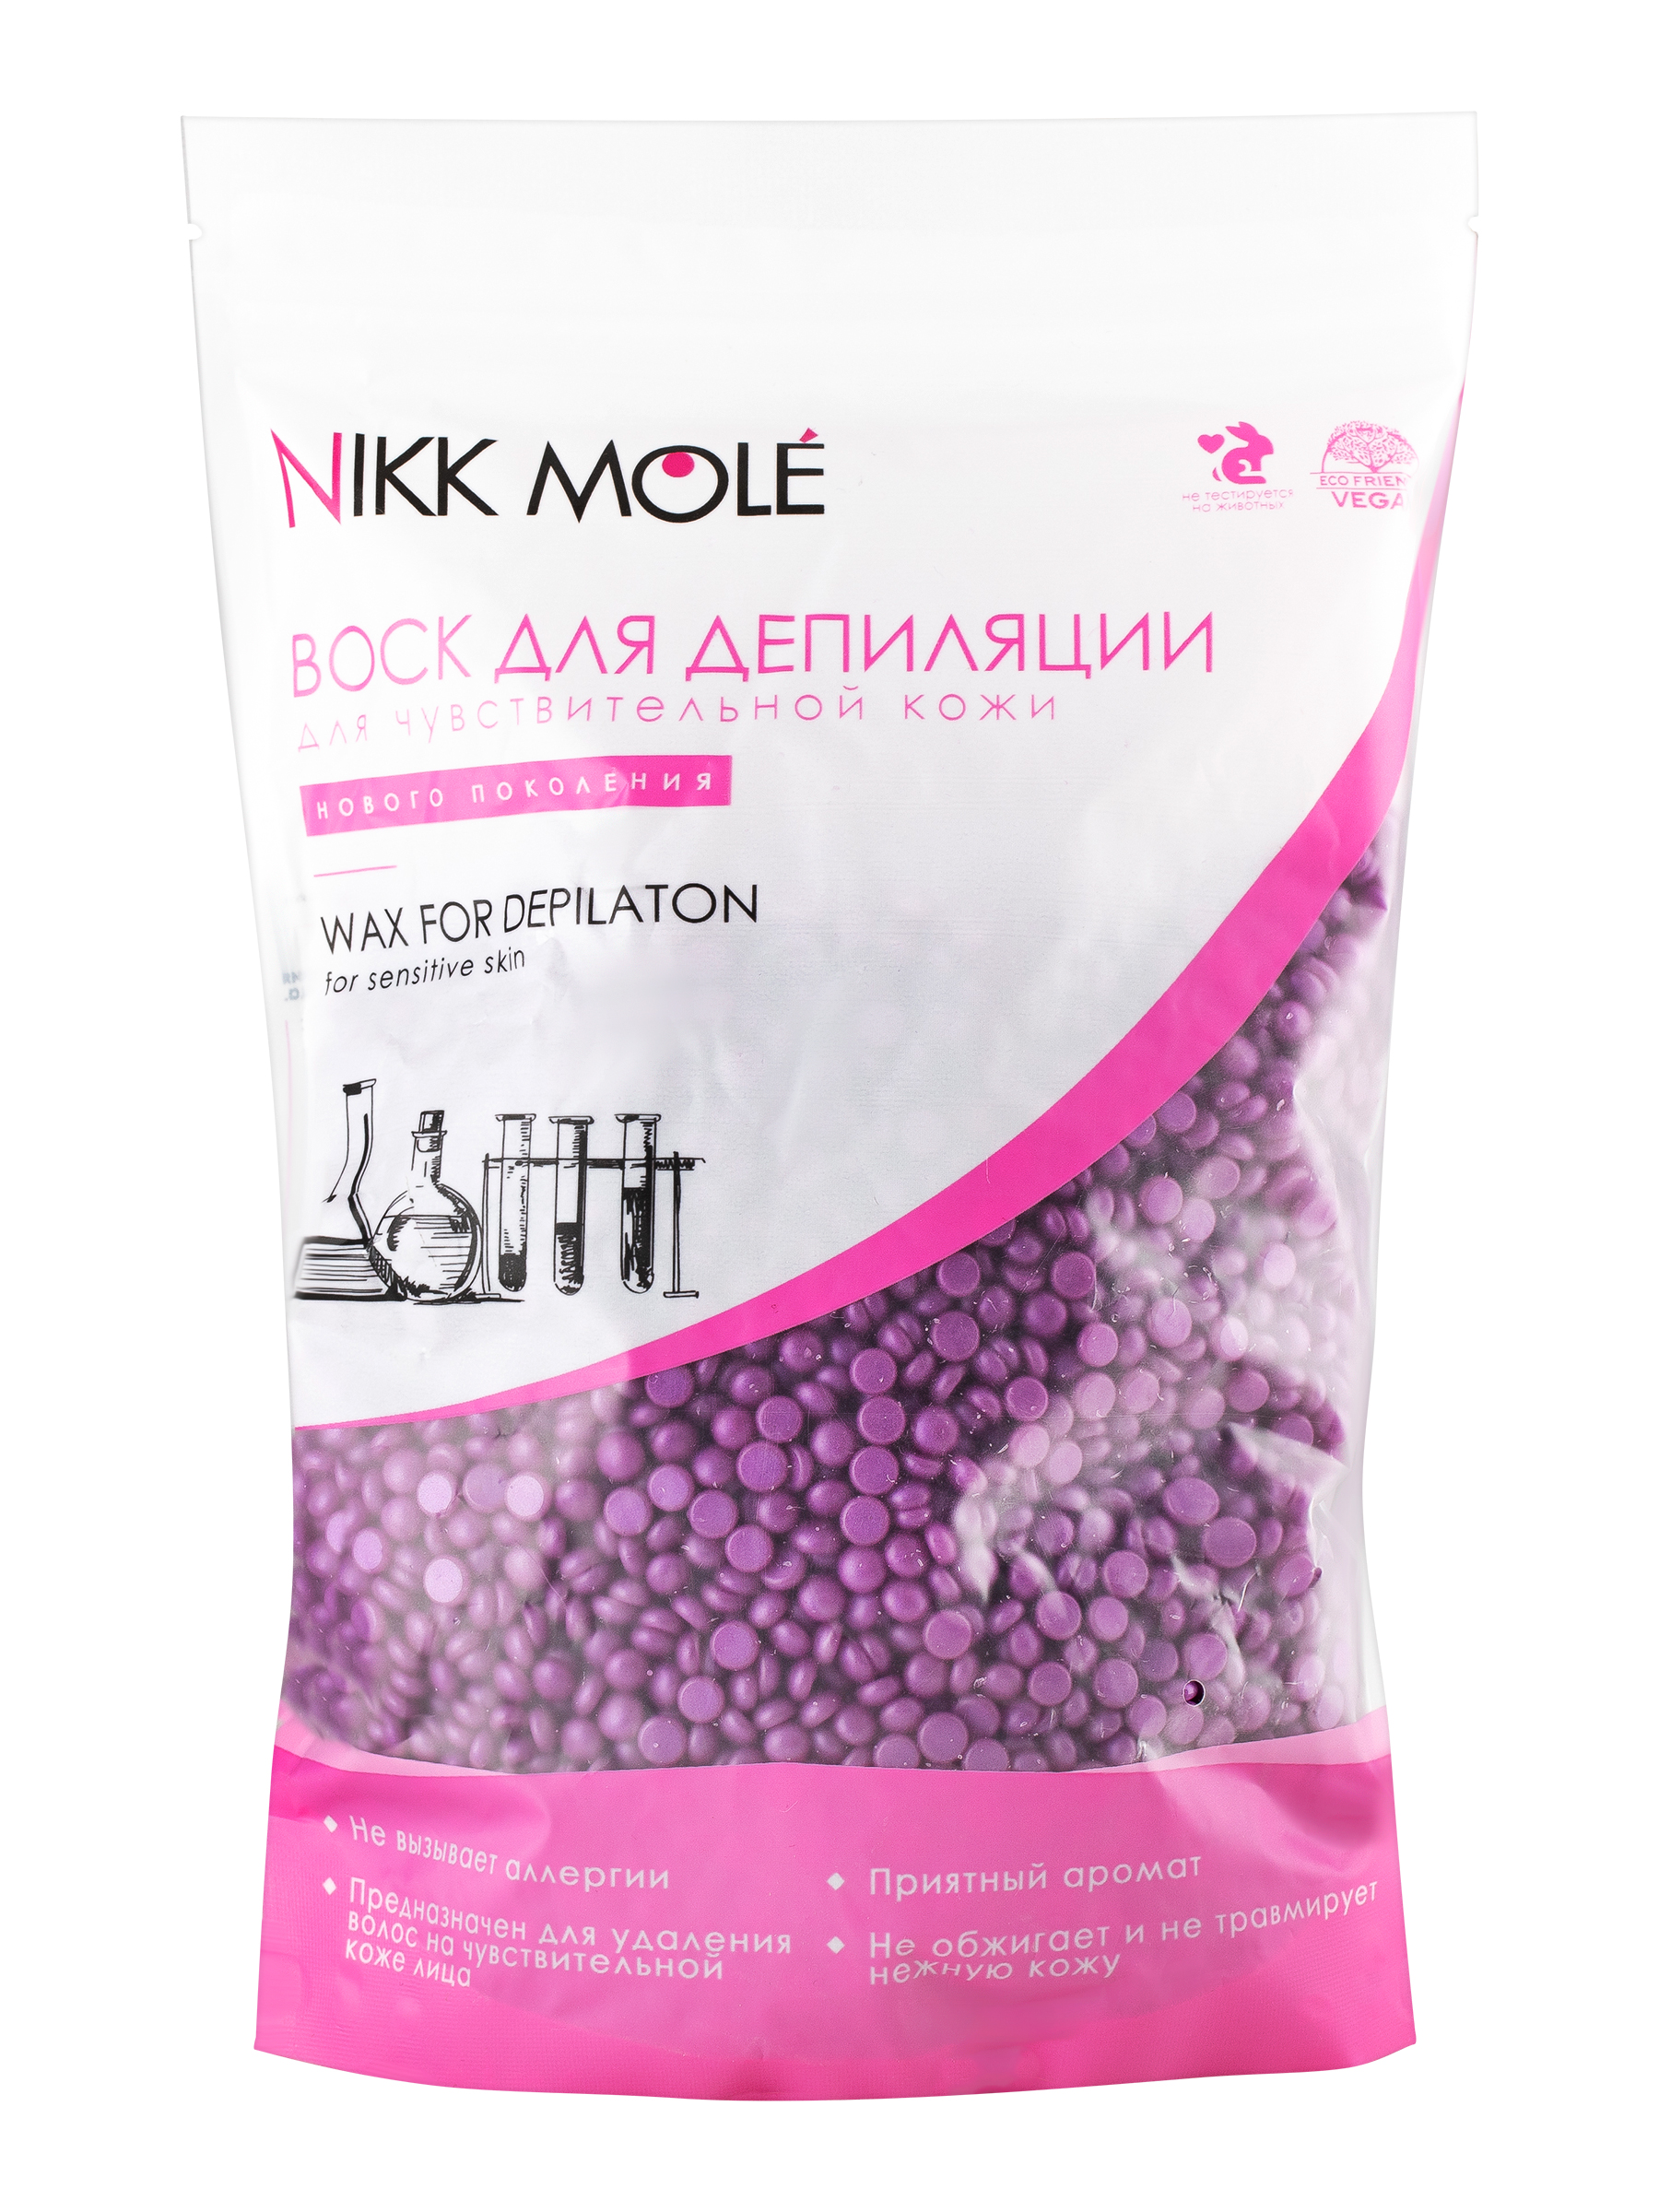 Воск для депиляции Nikk Mole Виноград, для чувствительной кожи лица, в гранулах, 500 г пинцет nikk mole широкий классический персик